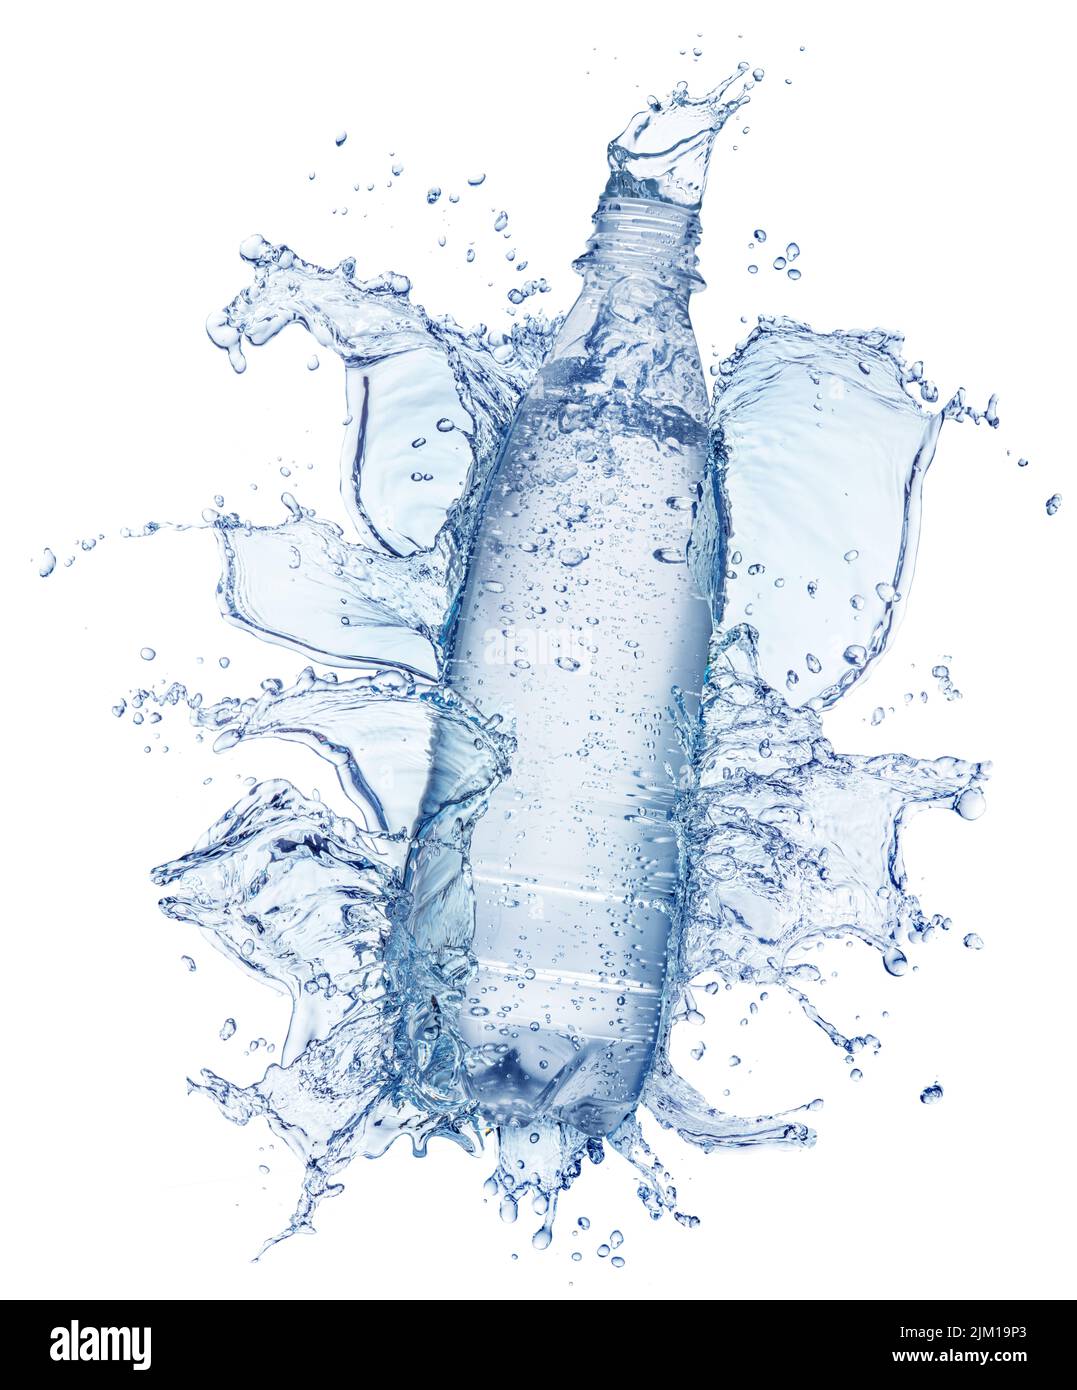 Flasche Wasser im Wasser Splash und Wasser Splash Krone oben. Datei enthält Beschneidungspfad. Stockfoto